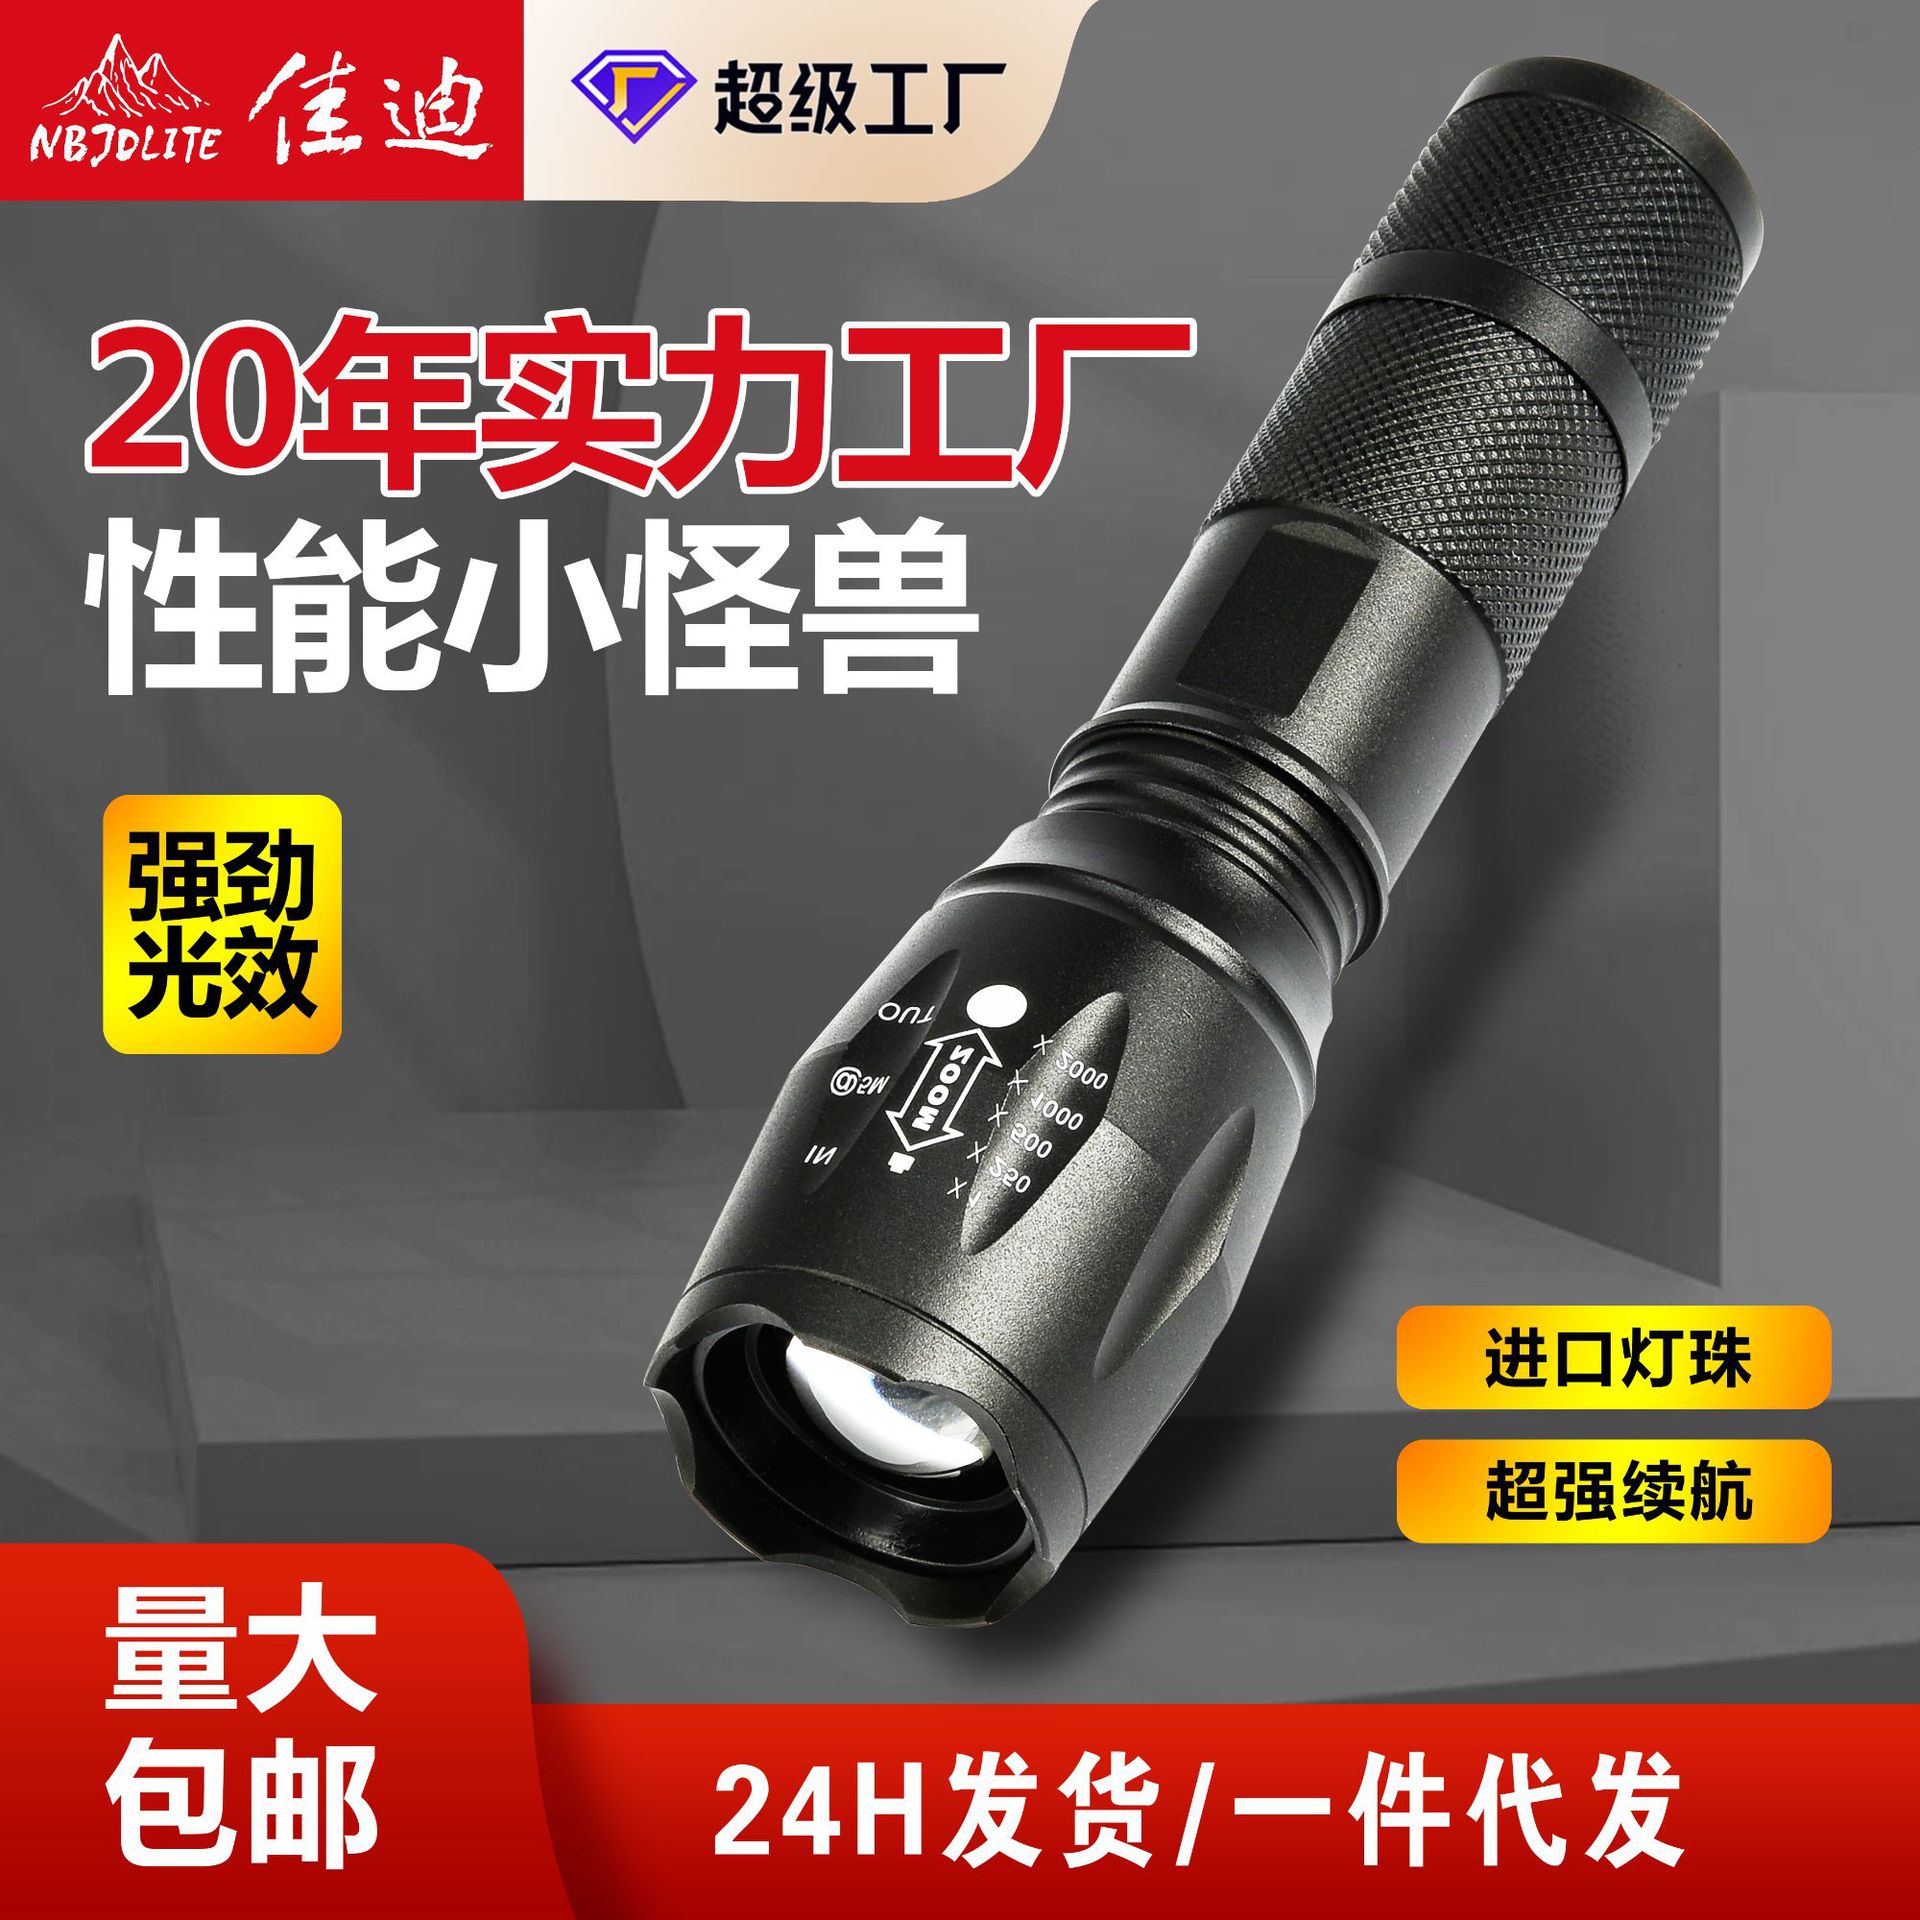 佳迪强光镭射手电筒电池款便携式长续航手电高亮度白激光手电筒